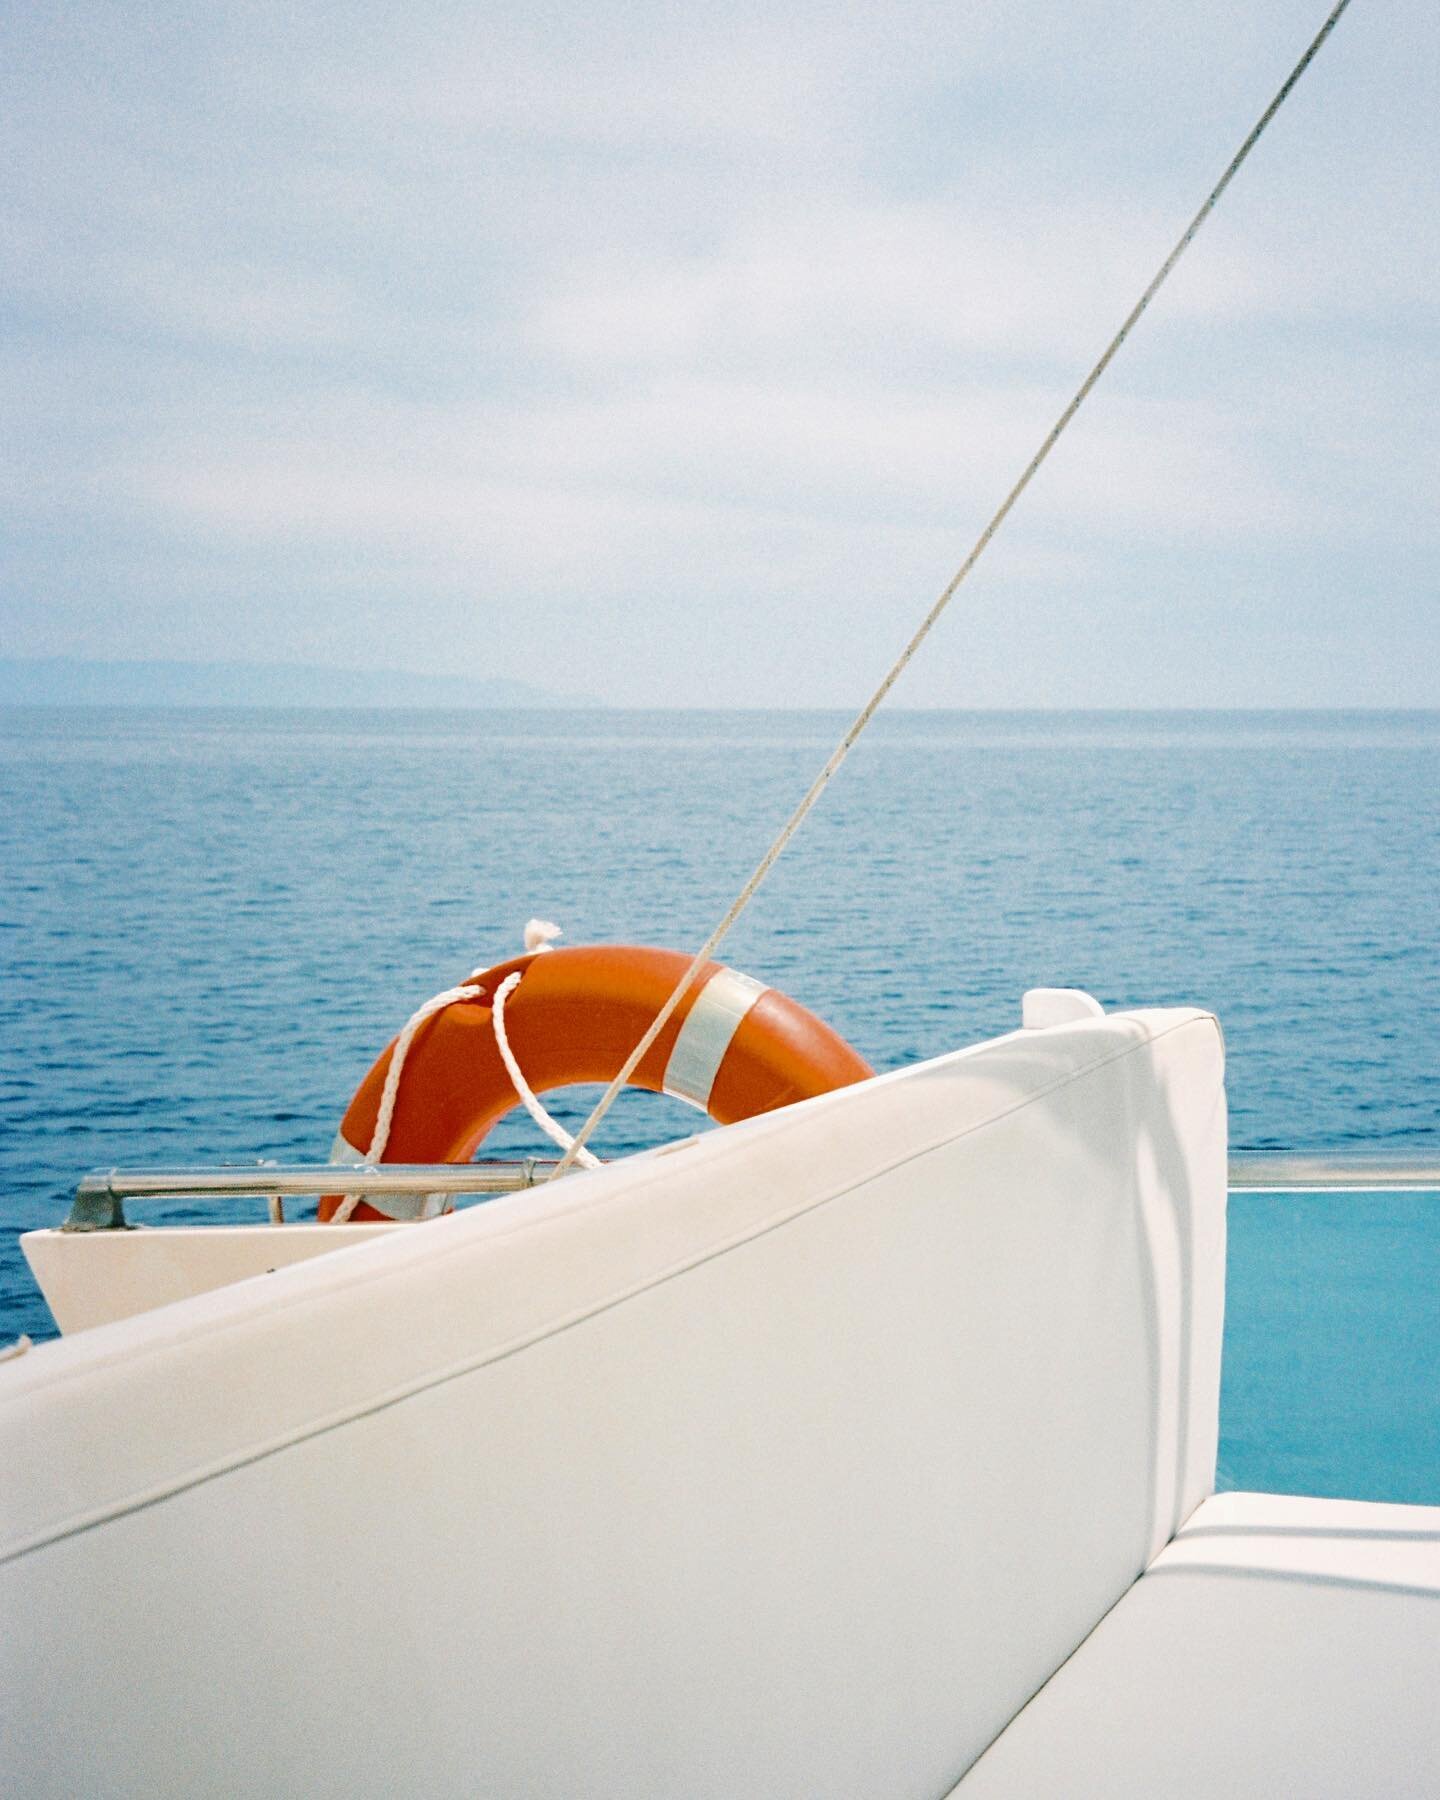 On a boat! In Grecia! 🇬🇷